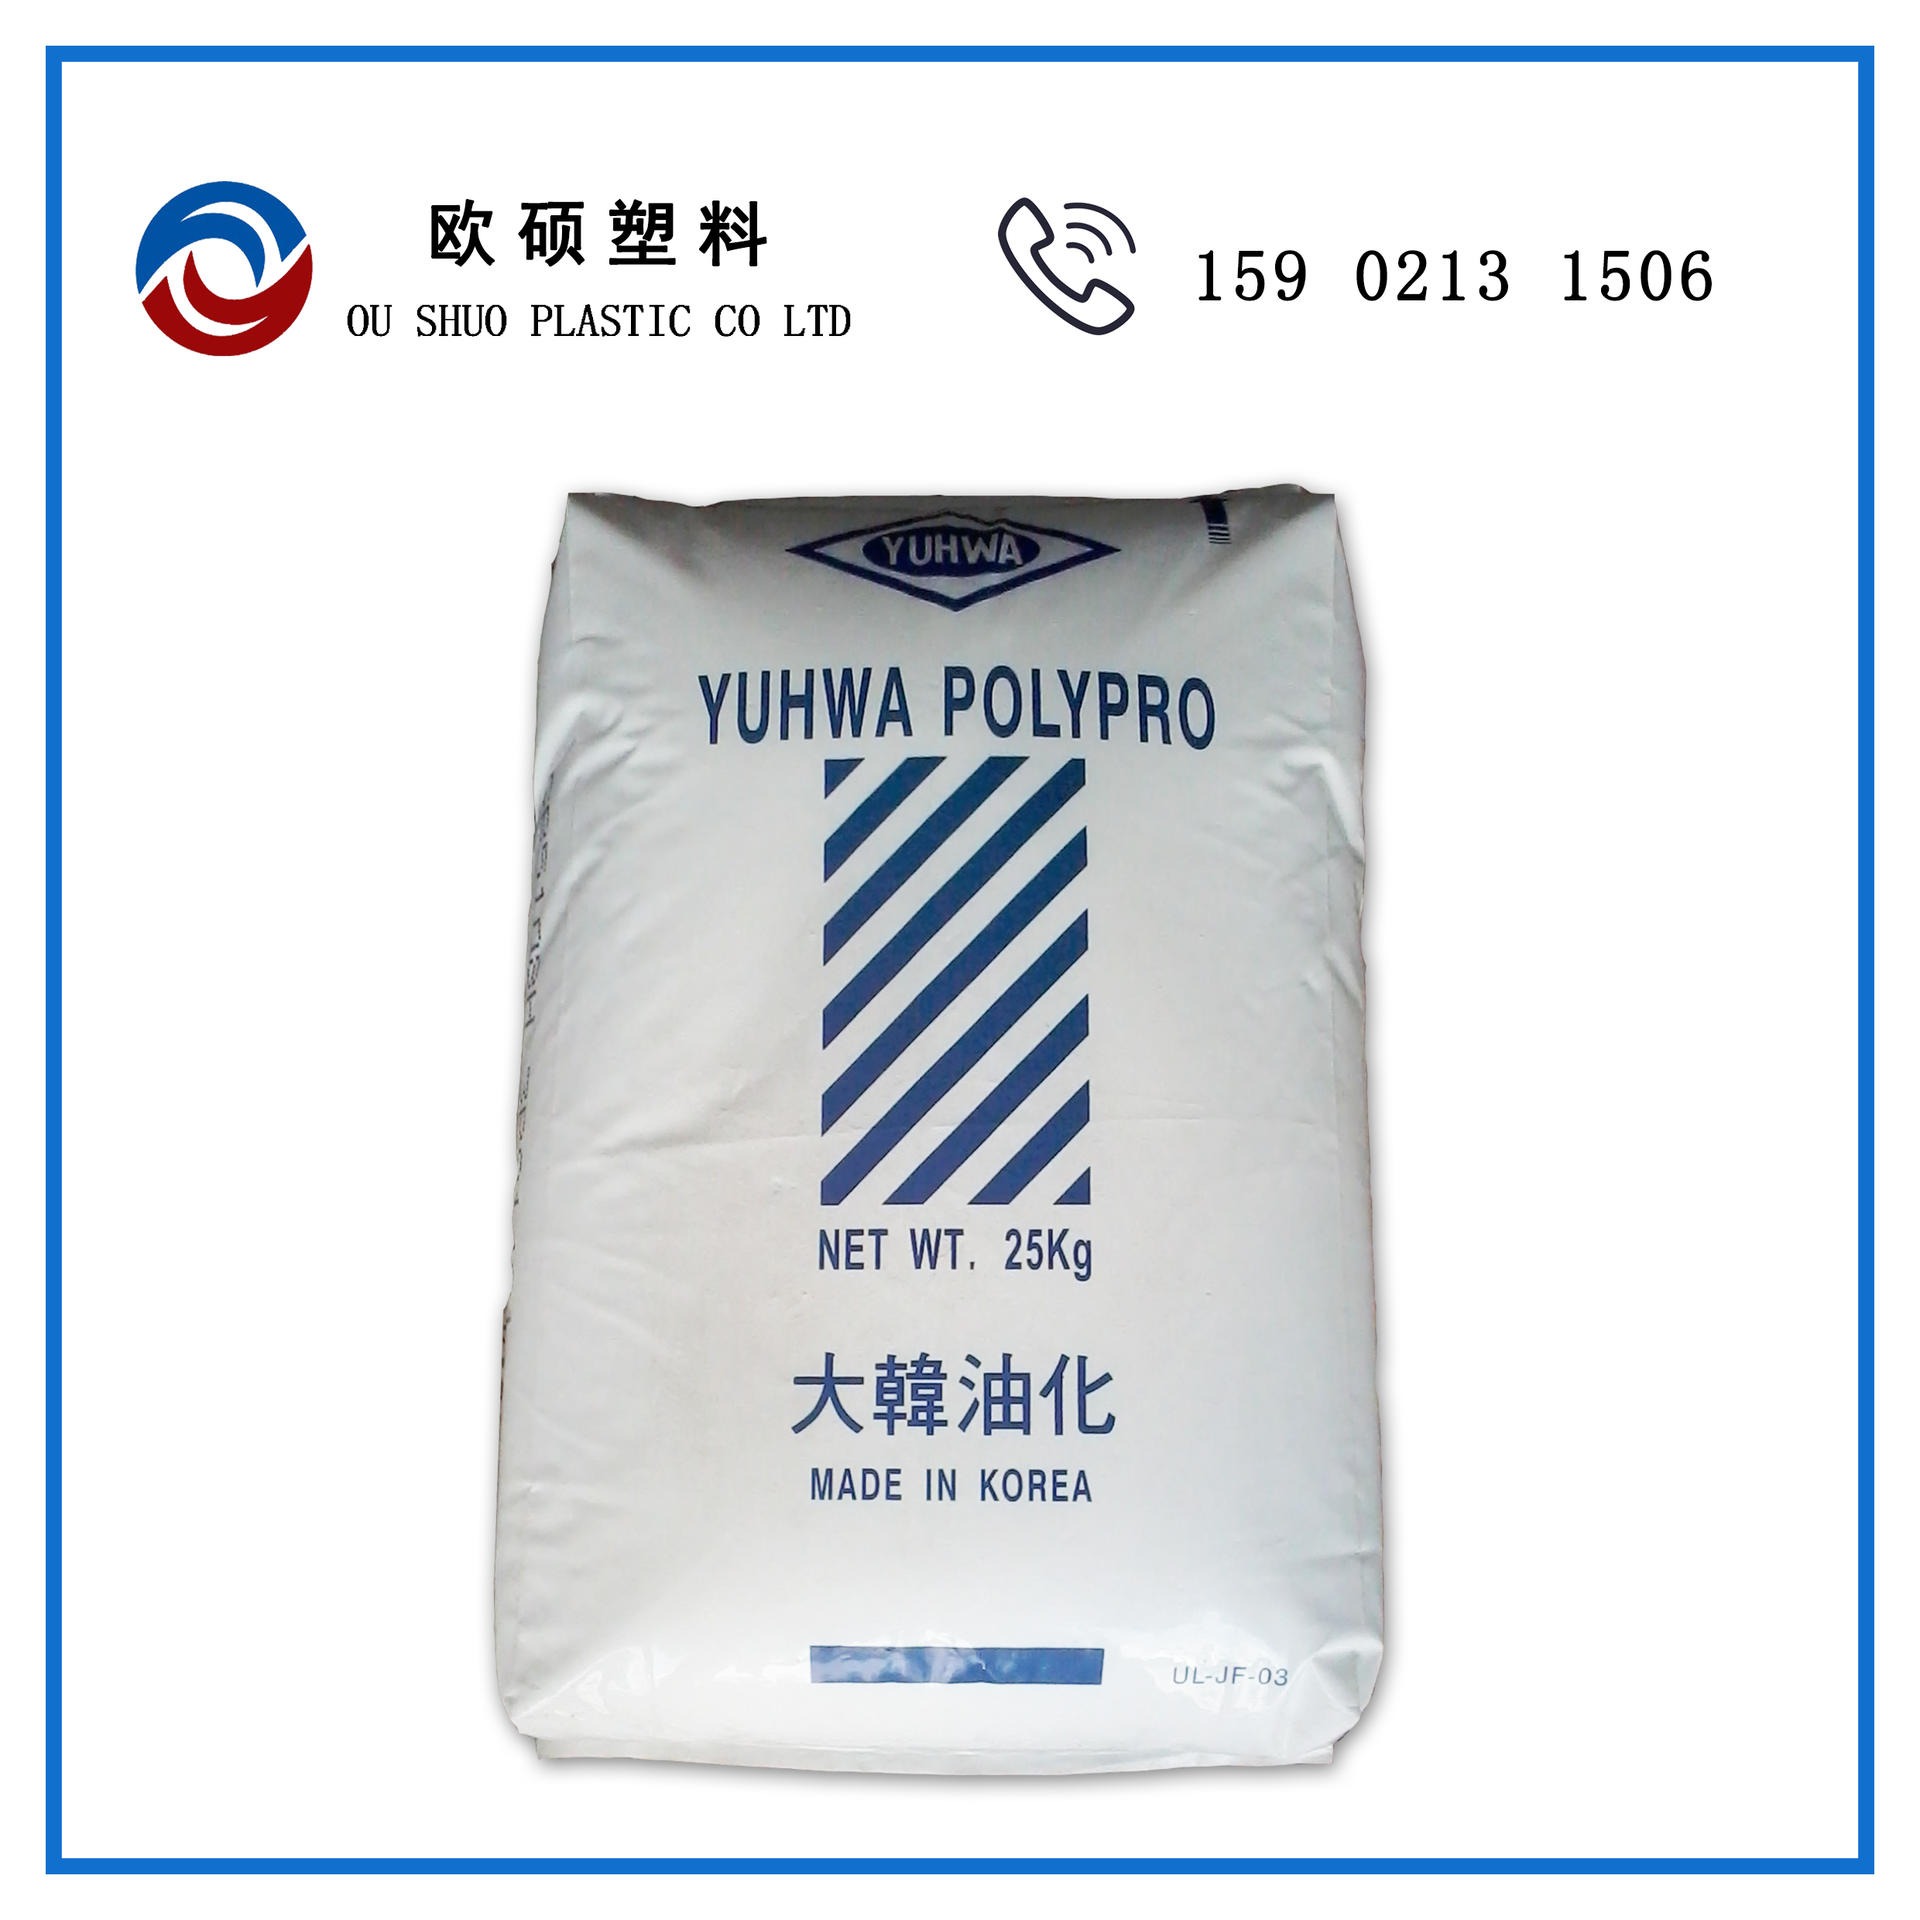 现货PP HJ4045 韩国油化 均聚注塑 挤出级 聚丙烯塑胶原料